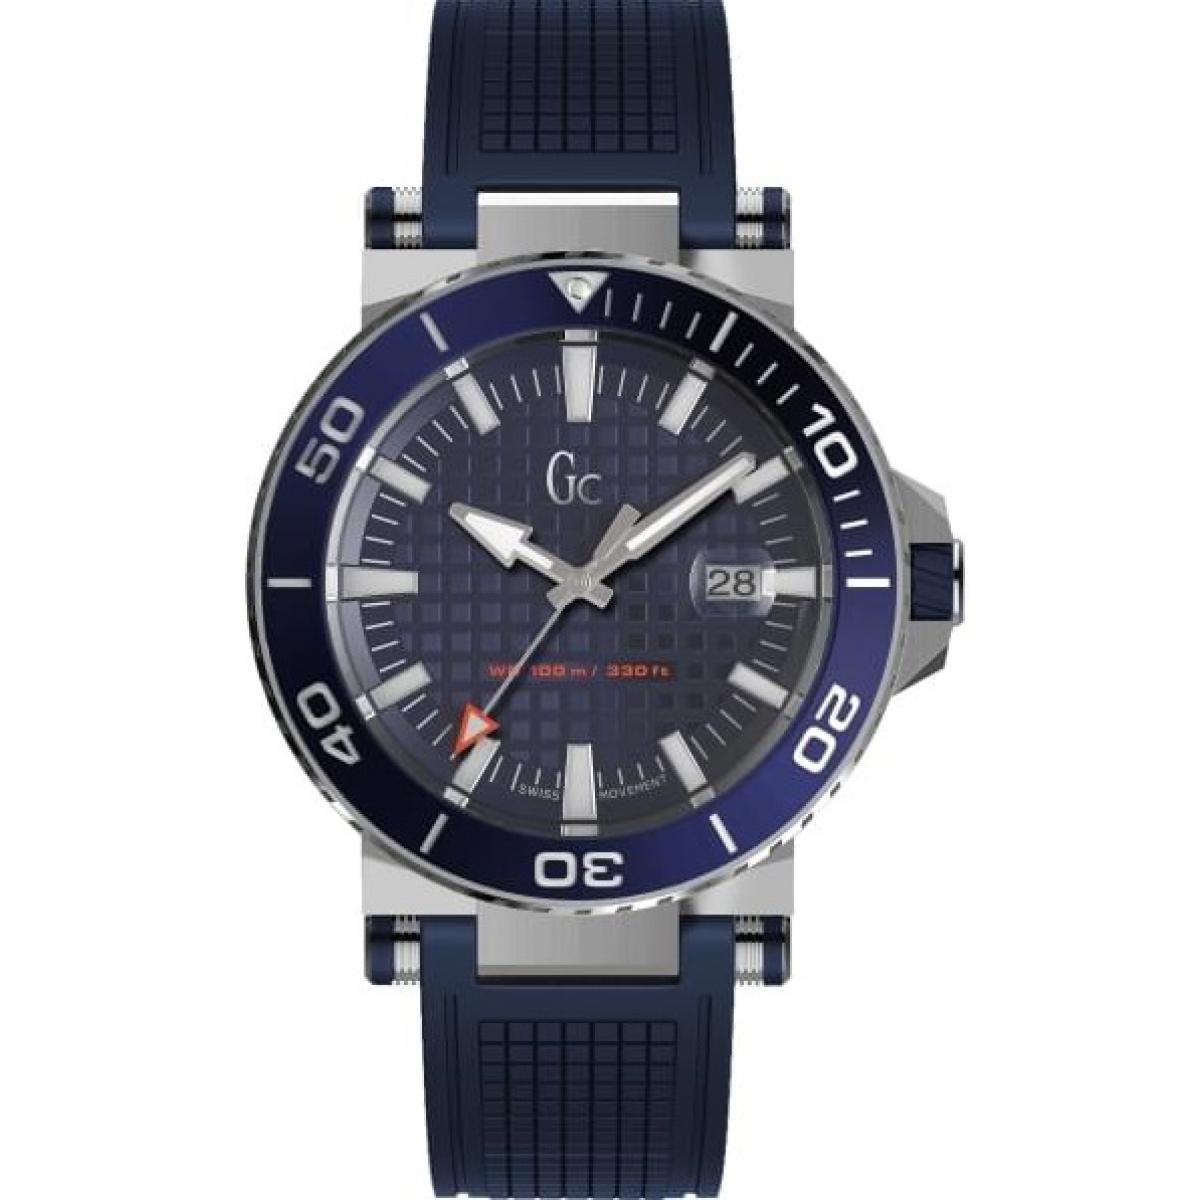 Promo : Montre GC Y36003G7 - Diver Code Boitier Acier Gris Bracelet Silicone Bleu Cadran Bleu Homme